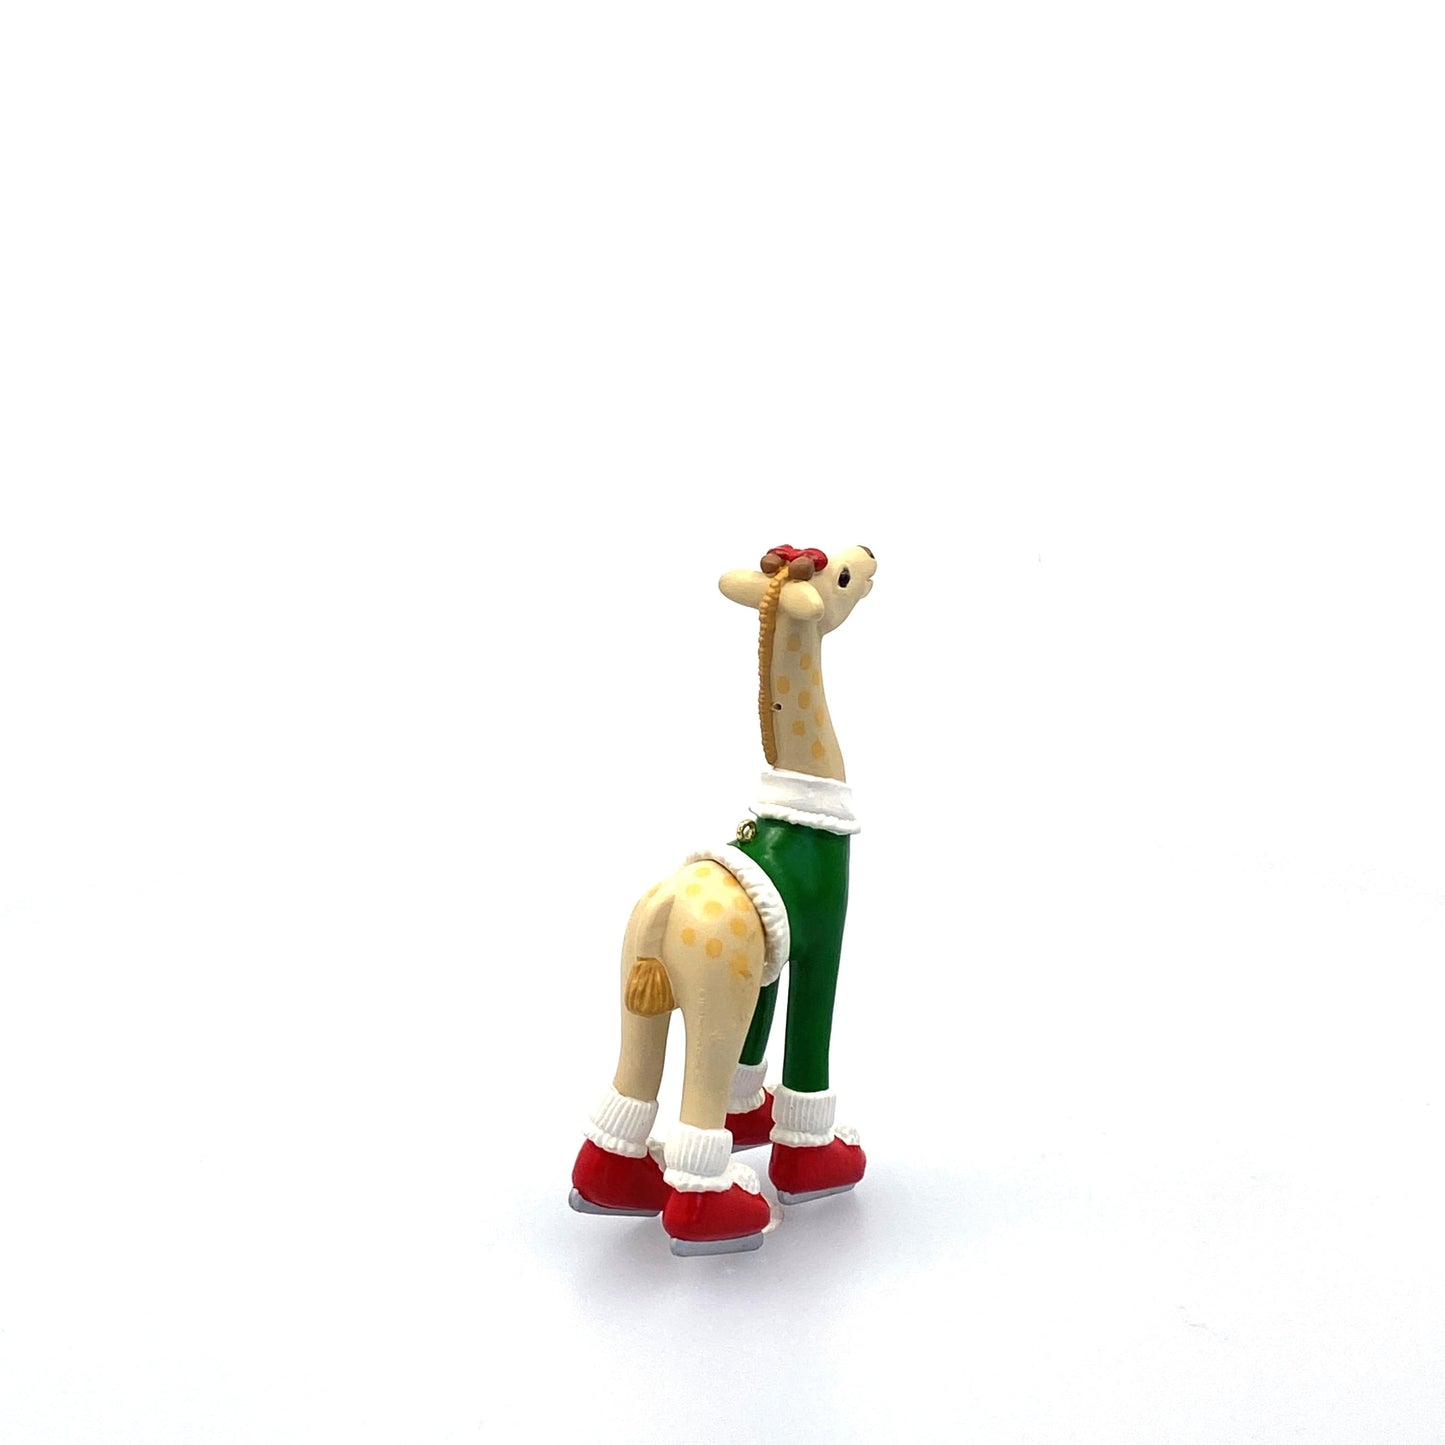 Hallmark Keepsake Christmas Tree Holiday Ornament Skating Giraffe “Daughter” 1993